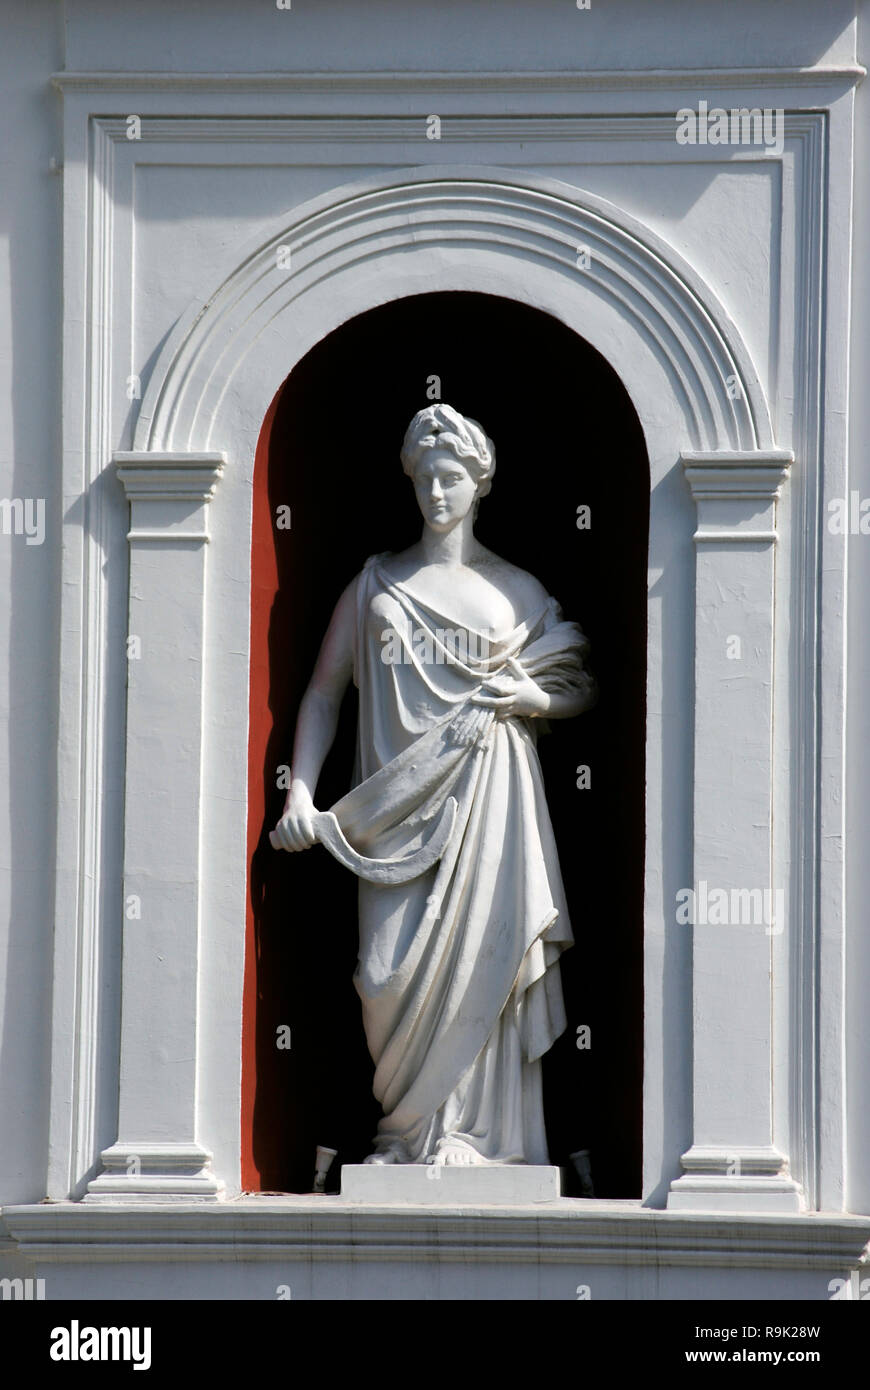 Ucrania. Odessa. La escultura de Ceres, diosa de la agricultura, llevando los atributos de la hoz y el pico. La fachada del ayuntamiento de la ciudad. Foto de stock